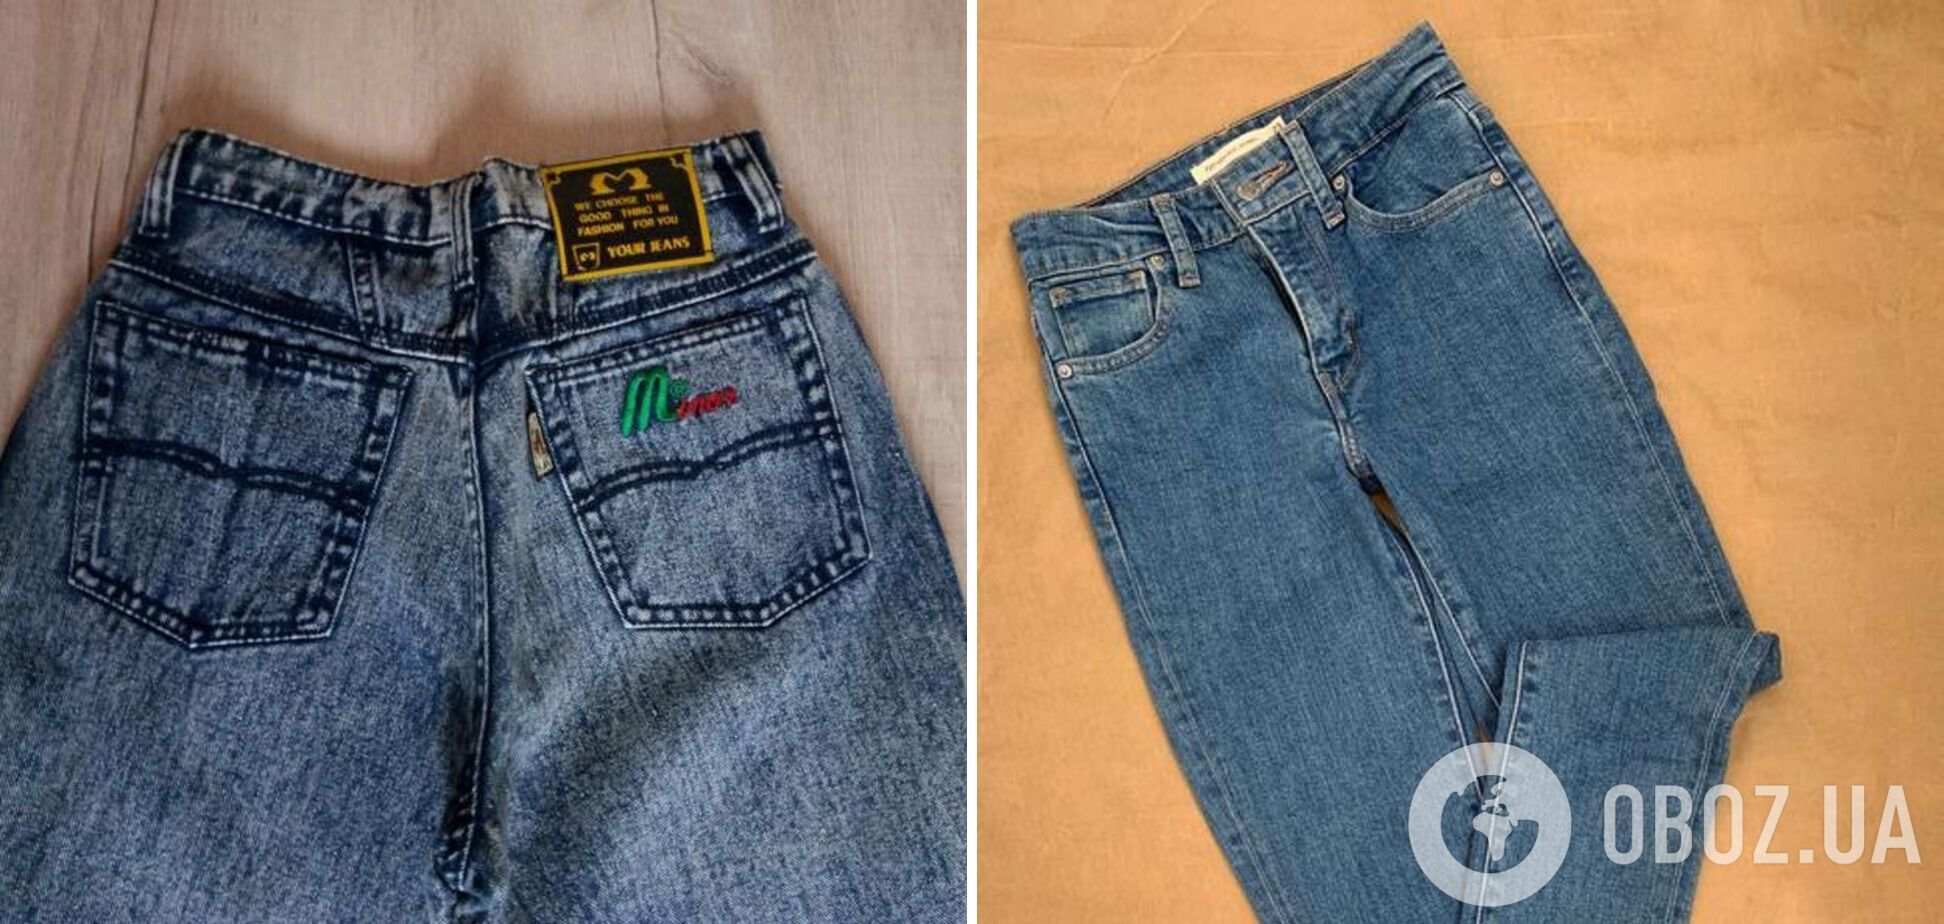 Імпортні джинси були ознакою розкоші